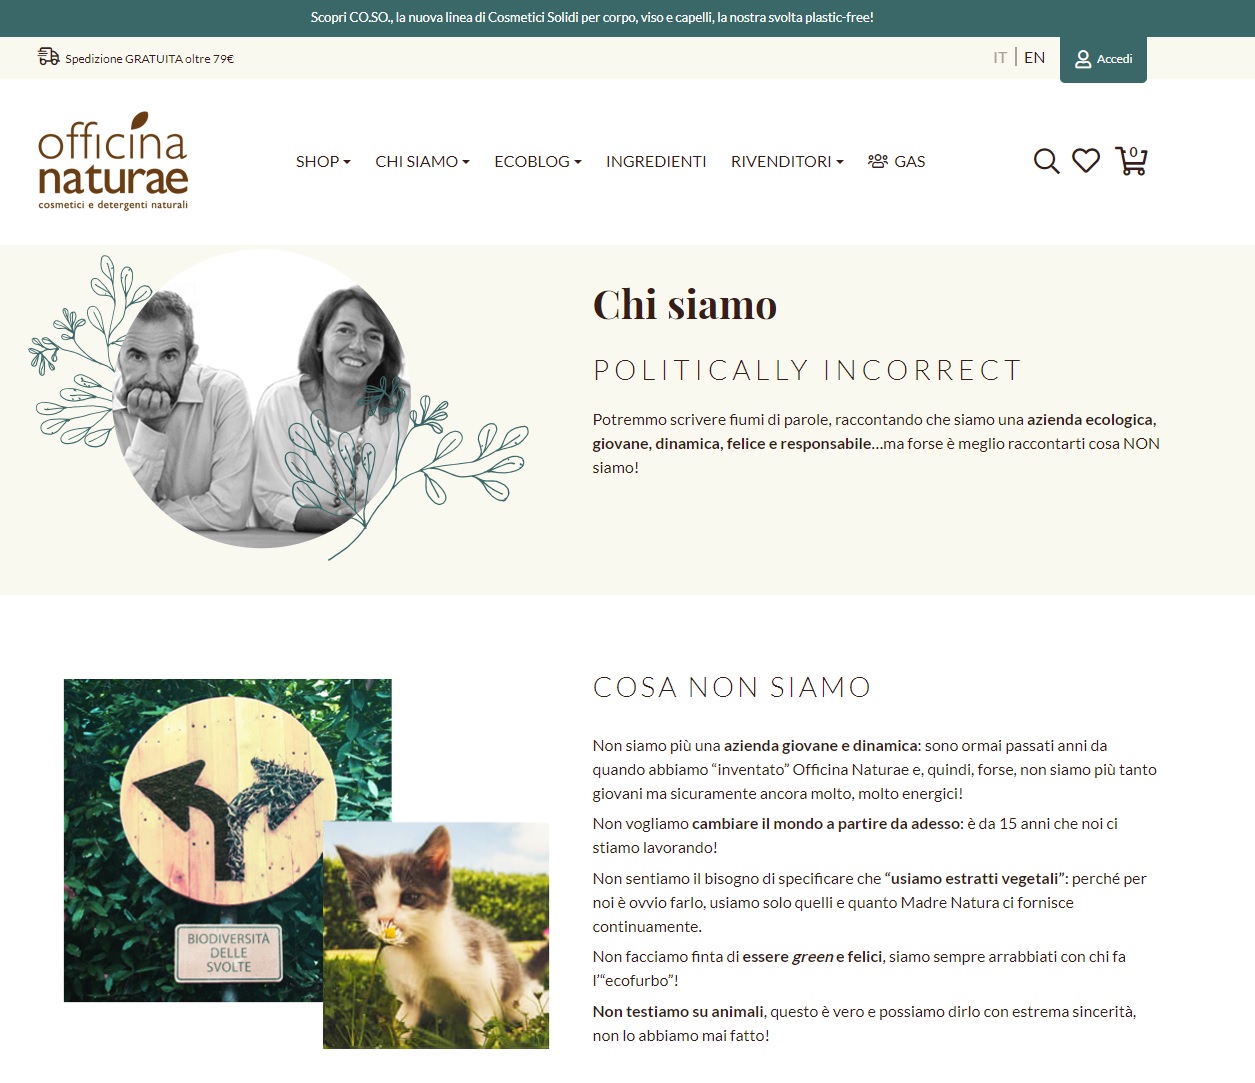 Officina Naturae company profile